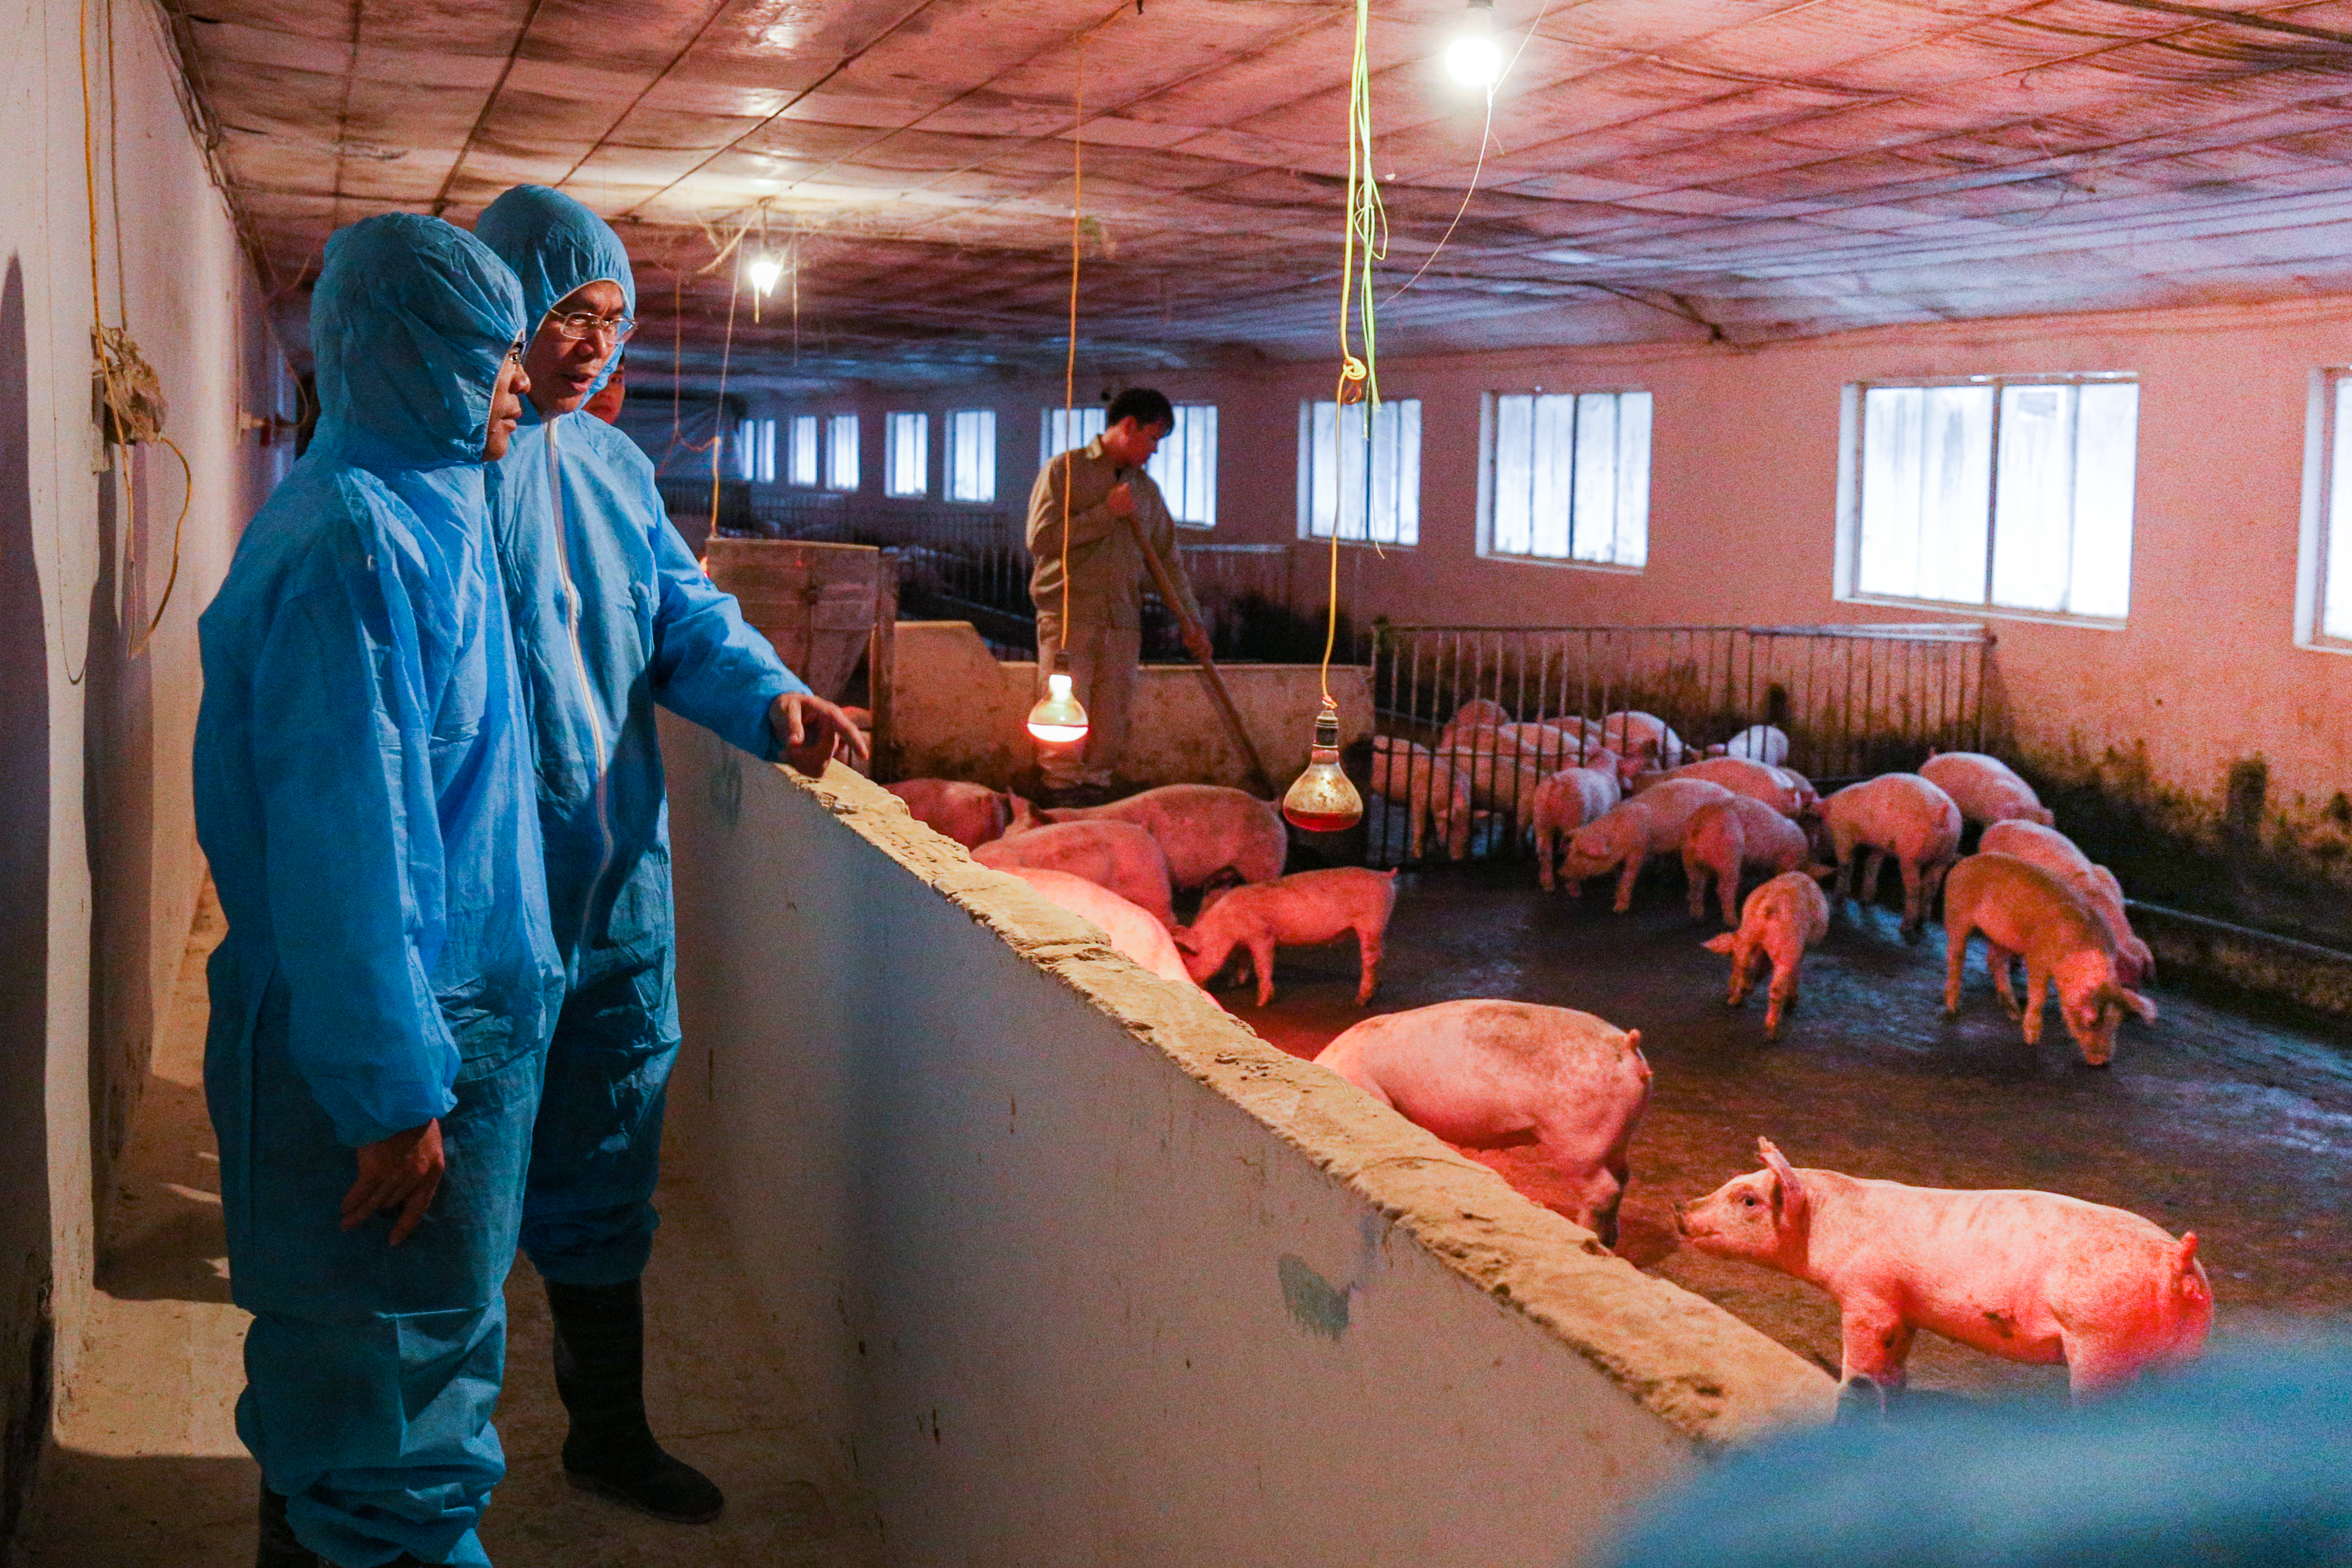 Đàn lợn 10 tuần tuổi khỏe mạnh trong trang trại ở huyện Việt Yên, tỉnh Bắc Giang, của Công ty TNHH Hải Thịnh Bắc Giang, nơi thử nghiệm vaccine vô hoạt phòng bệnh dịch tả lợn châu Phi do Học viện Nông nghiệp Việt Nam nghiên cứu. Ảnh: Hoàng Nam